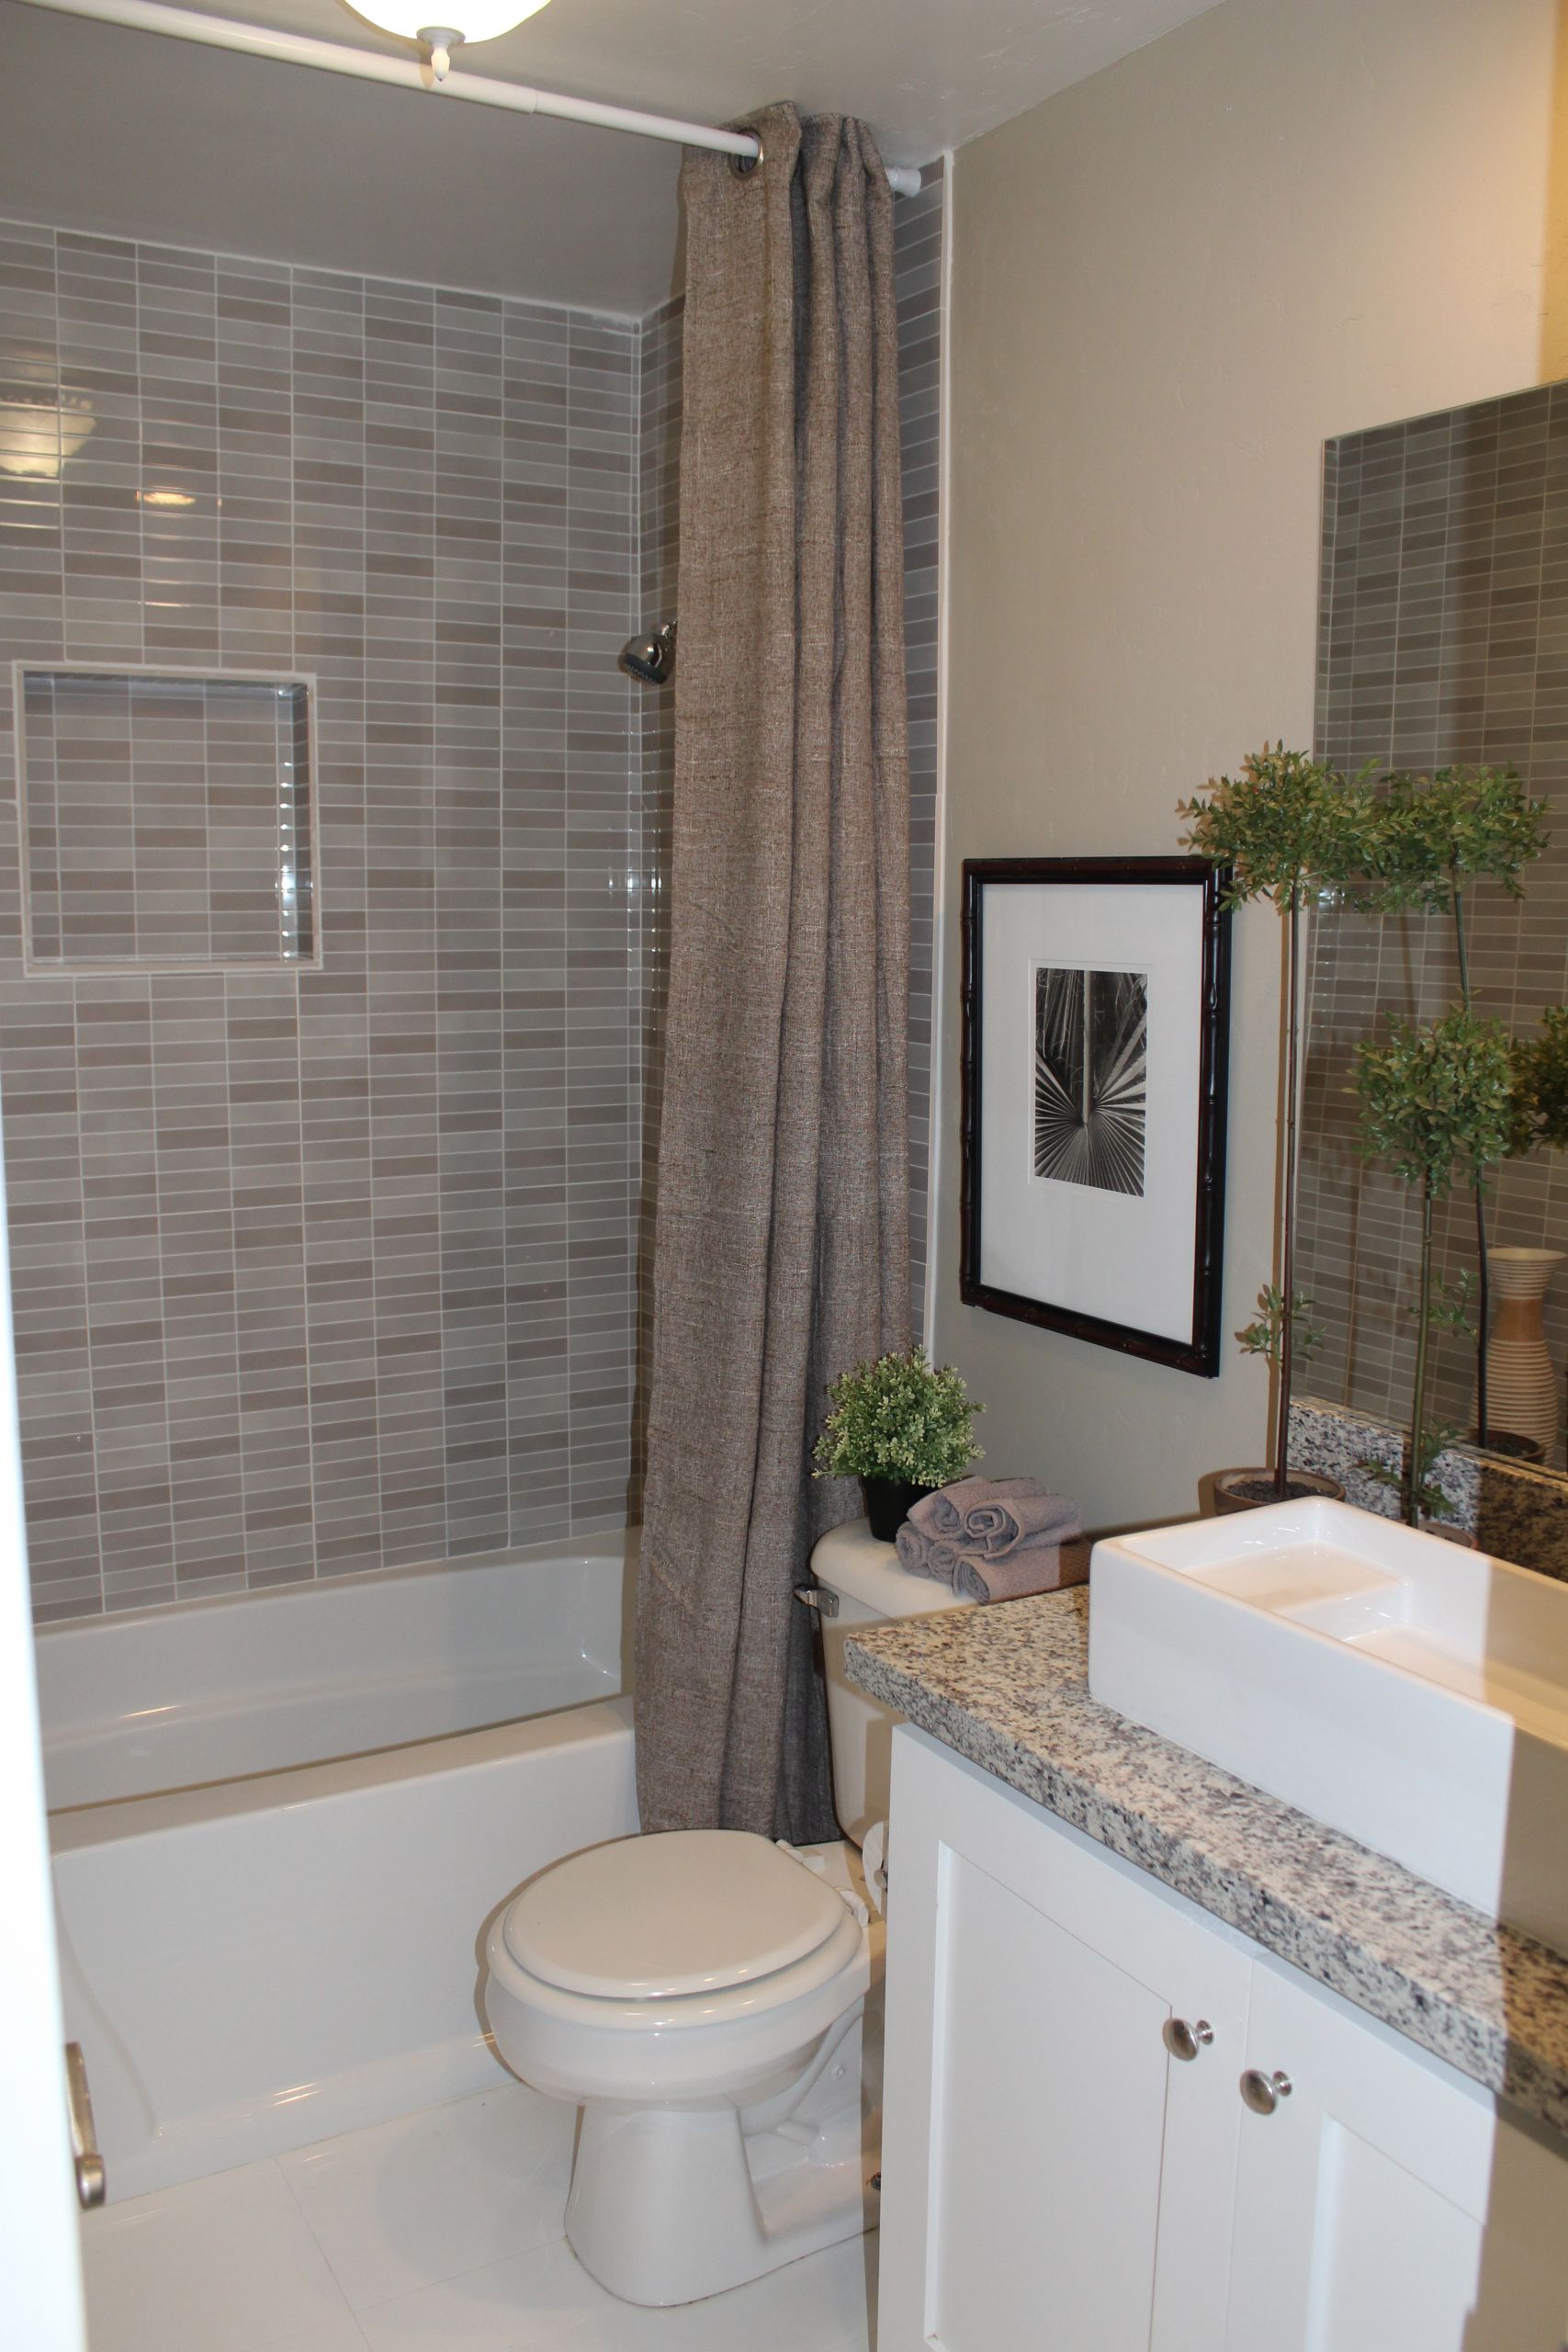 Bathroom Tub Shower Ideas
 Bathroom Tub Shower – HomesFeed